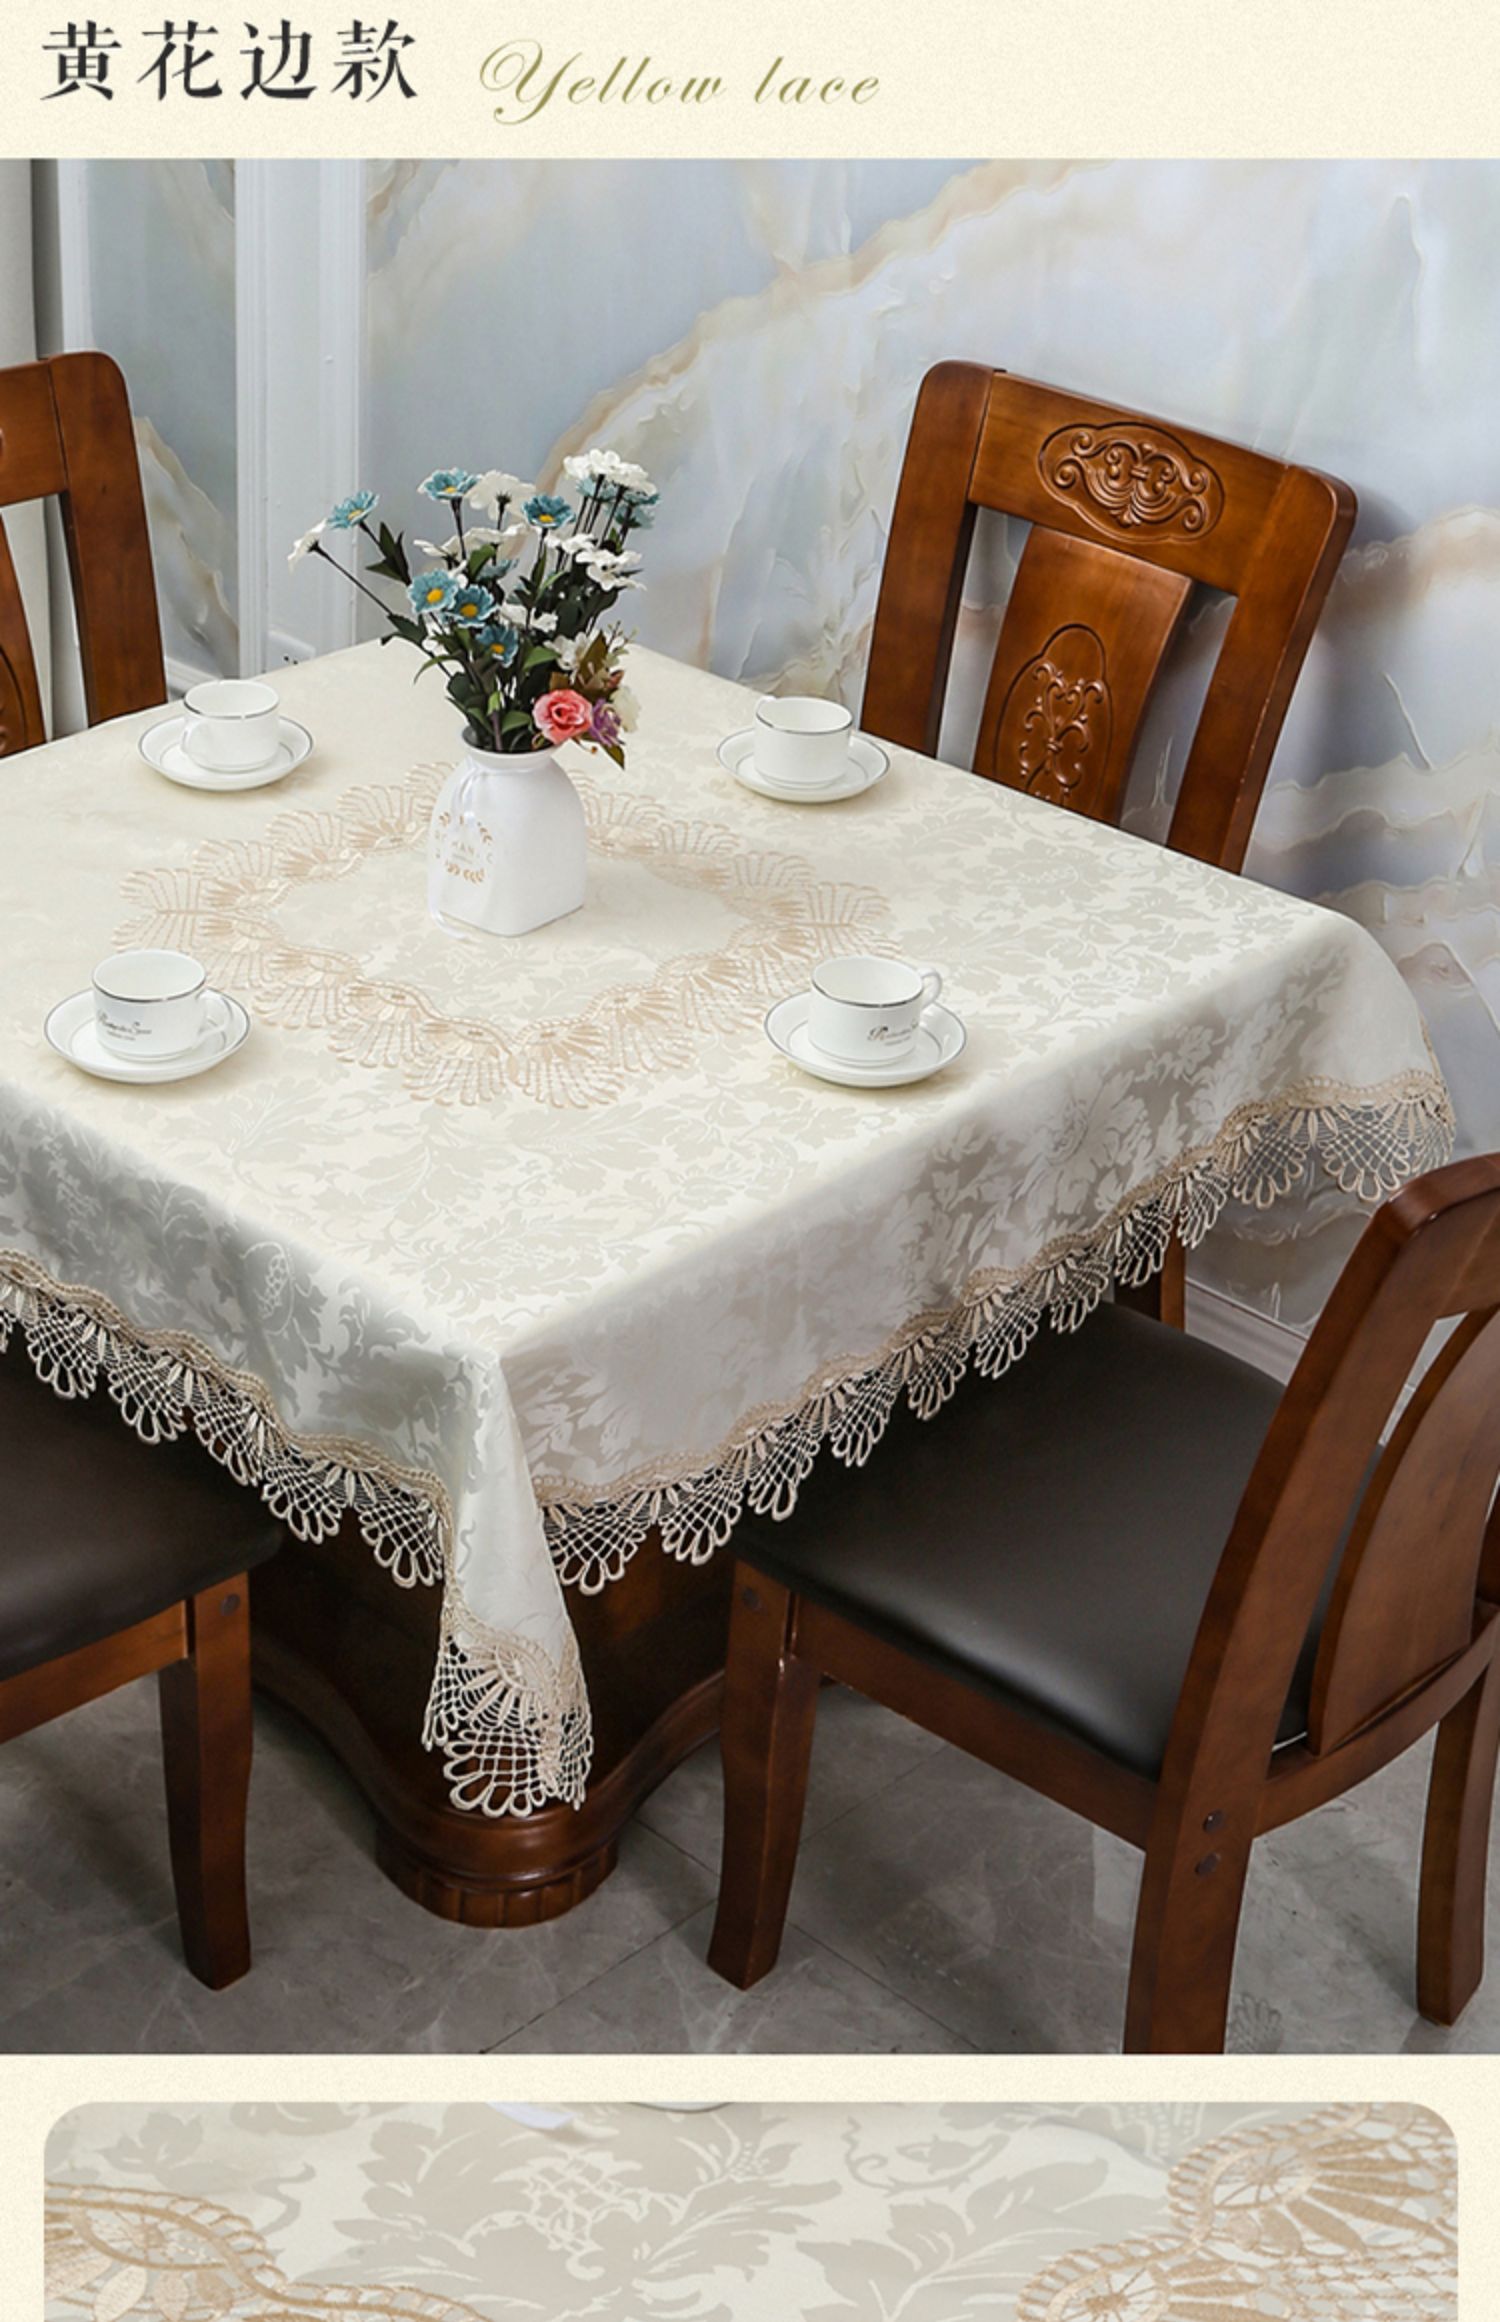 方桌桌布正方形台布家用四方老式简约欧式餐桌布八仙桌麻将桌盖布双色